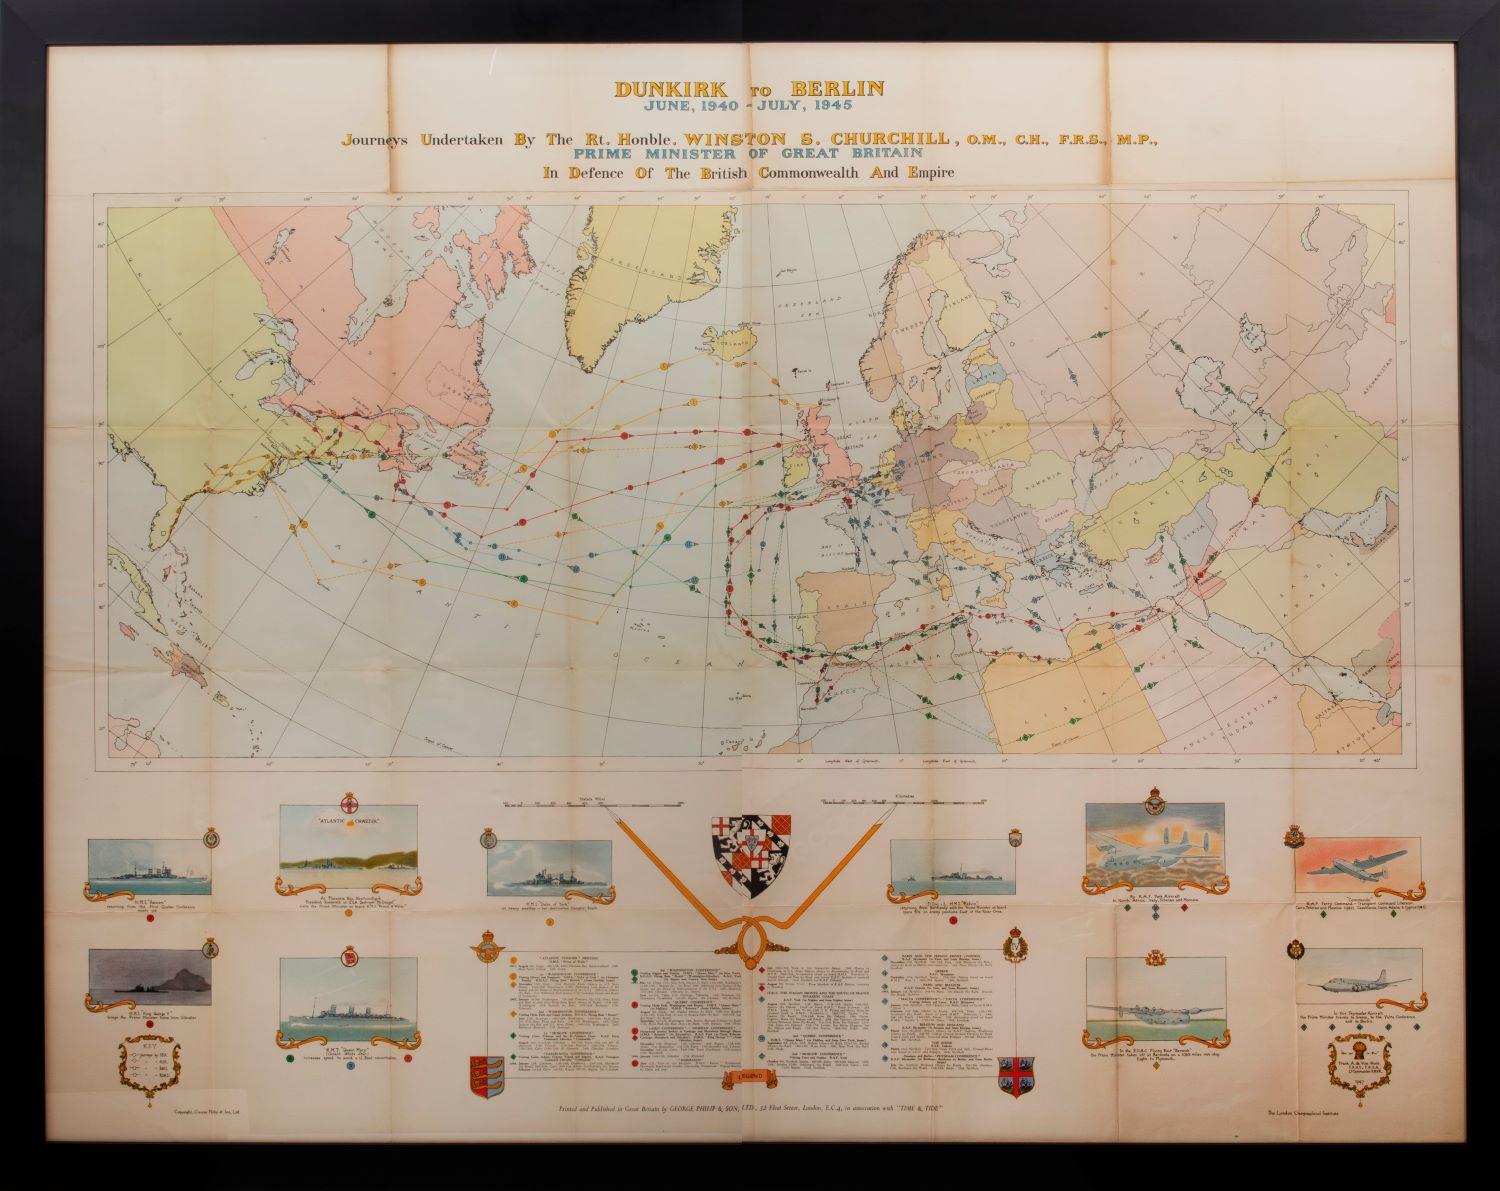 [Karte aus dem Zweiten Weltkrieg] – Dunkirk nach Berlin, Juni 1940. – Art von Unknown